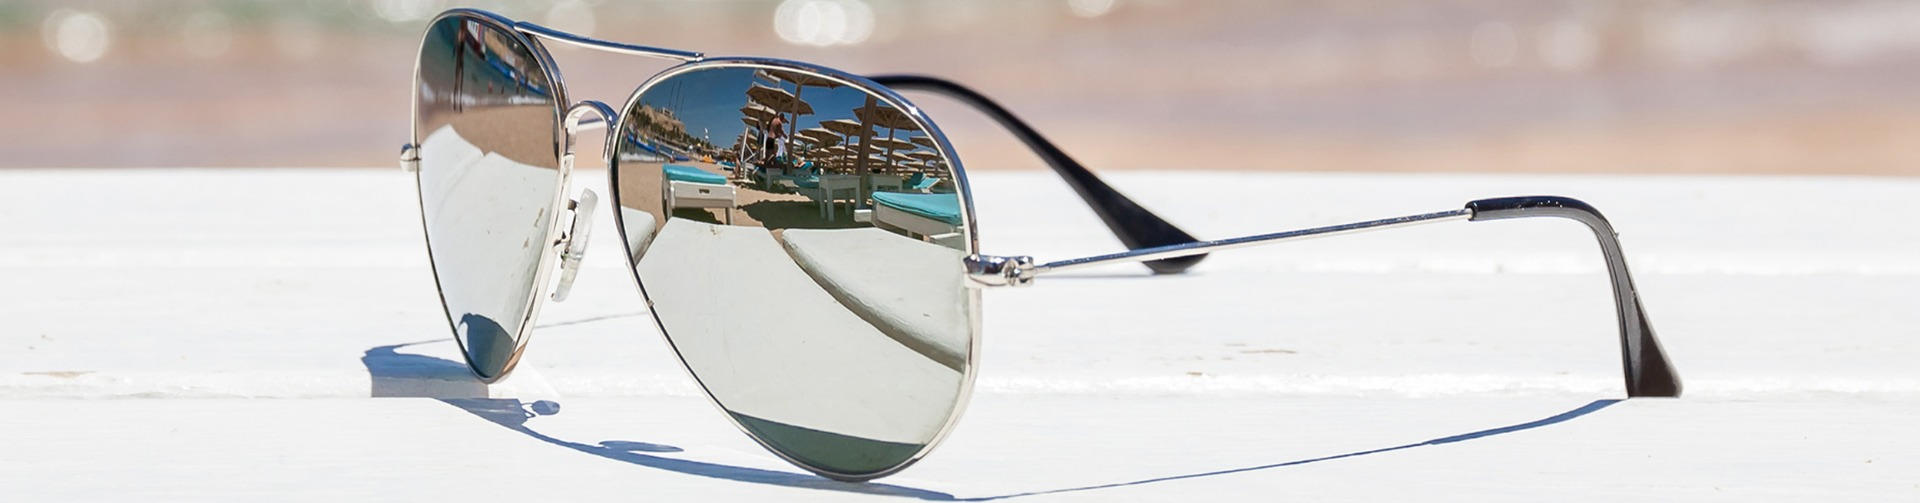 Polarized mirror lenses